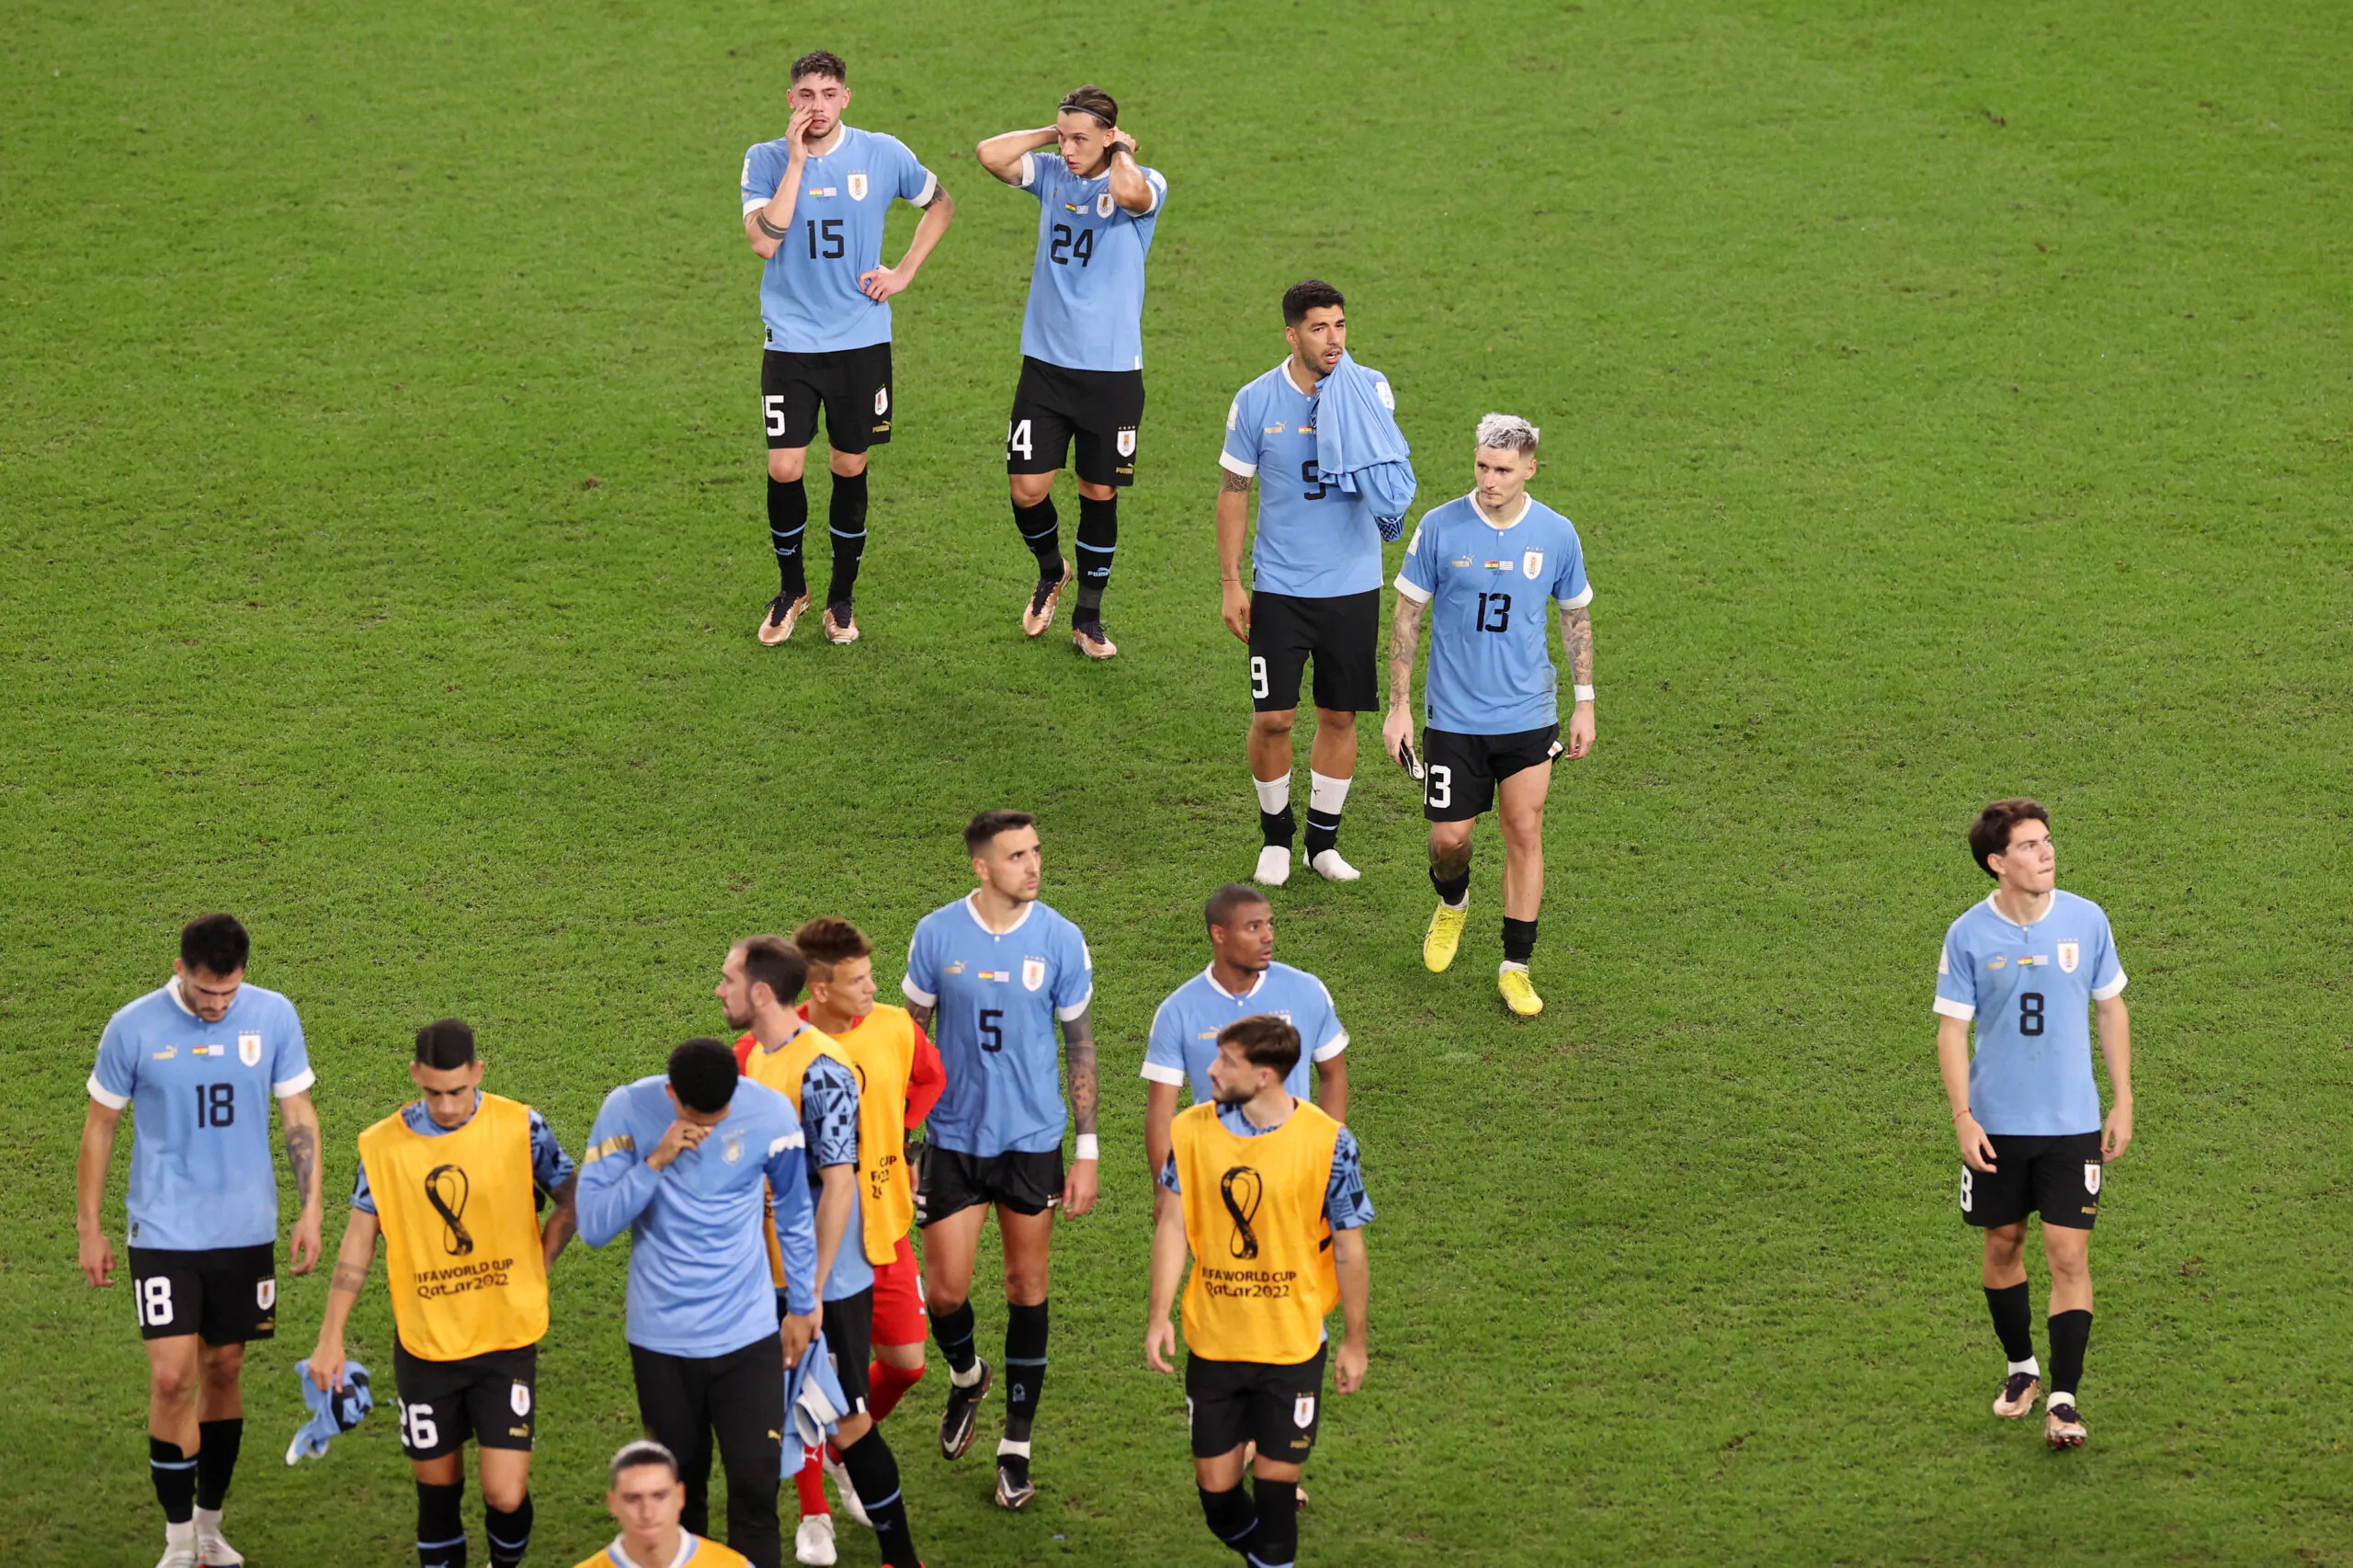 Mondiali – Uruguay eliminato, Cavani butta a terra il monitor del Var (VIDEO)